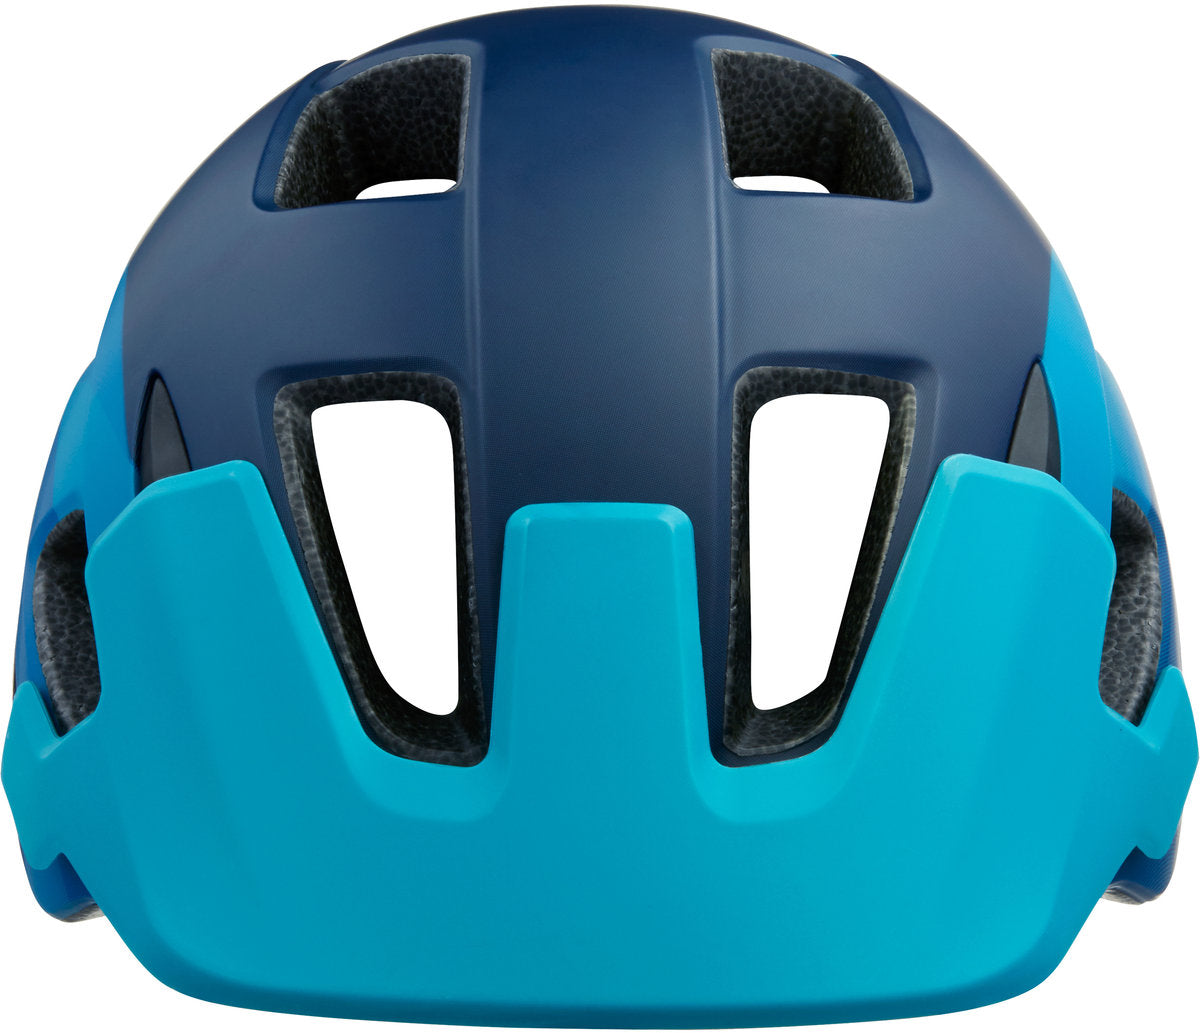 Lazer Chiru MIPS MTB Helmet - Matt Blue Steel